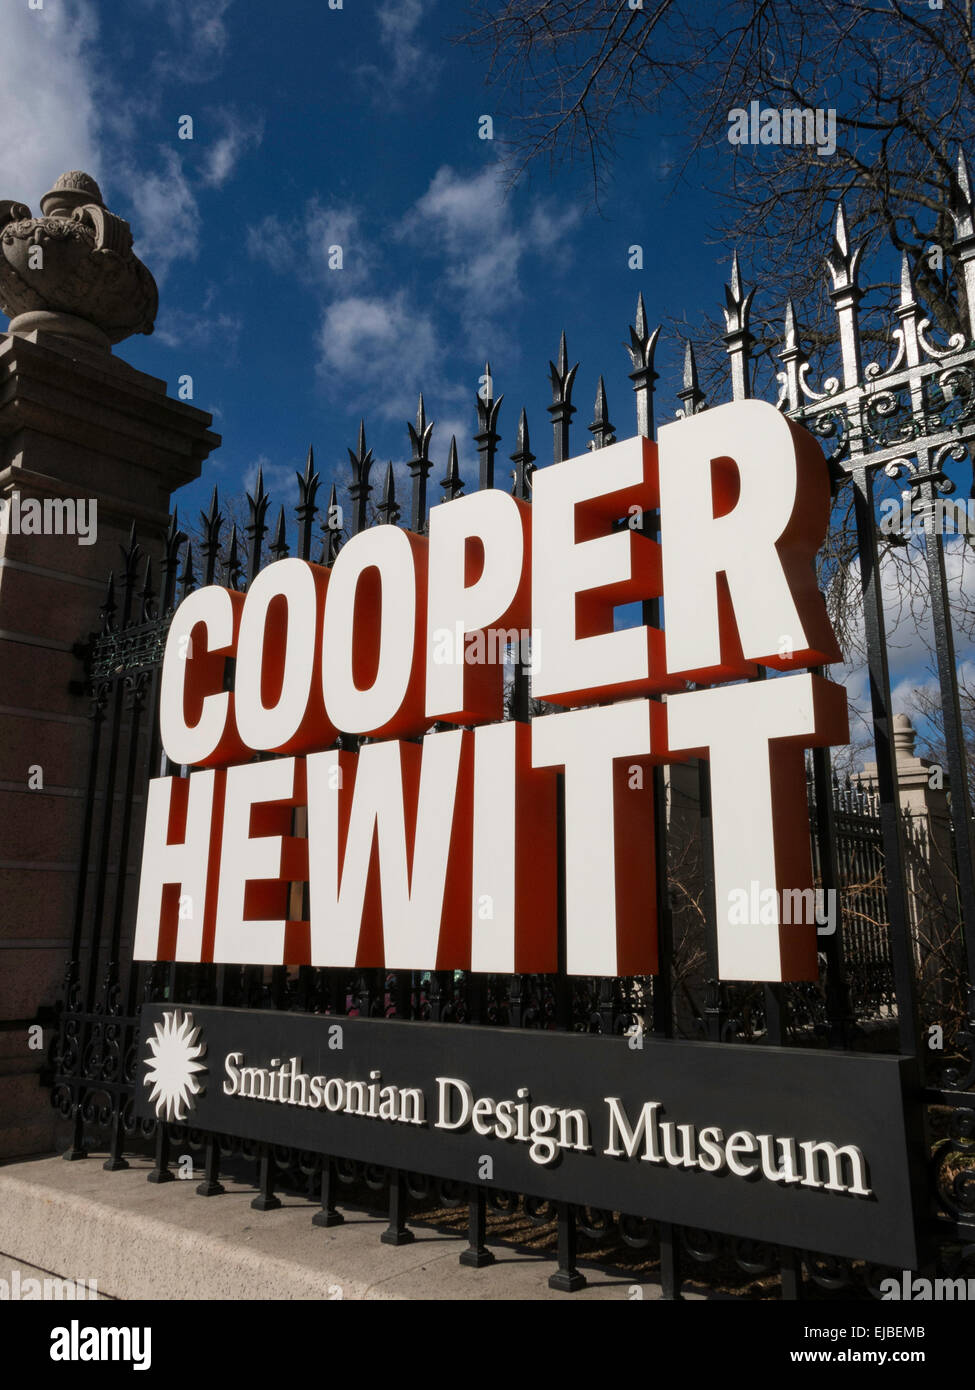 Cooper Hewitt Smithsonian Design Museum, New York City, USA Stock Photo